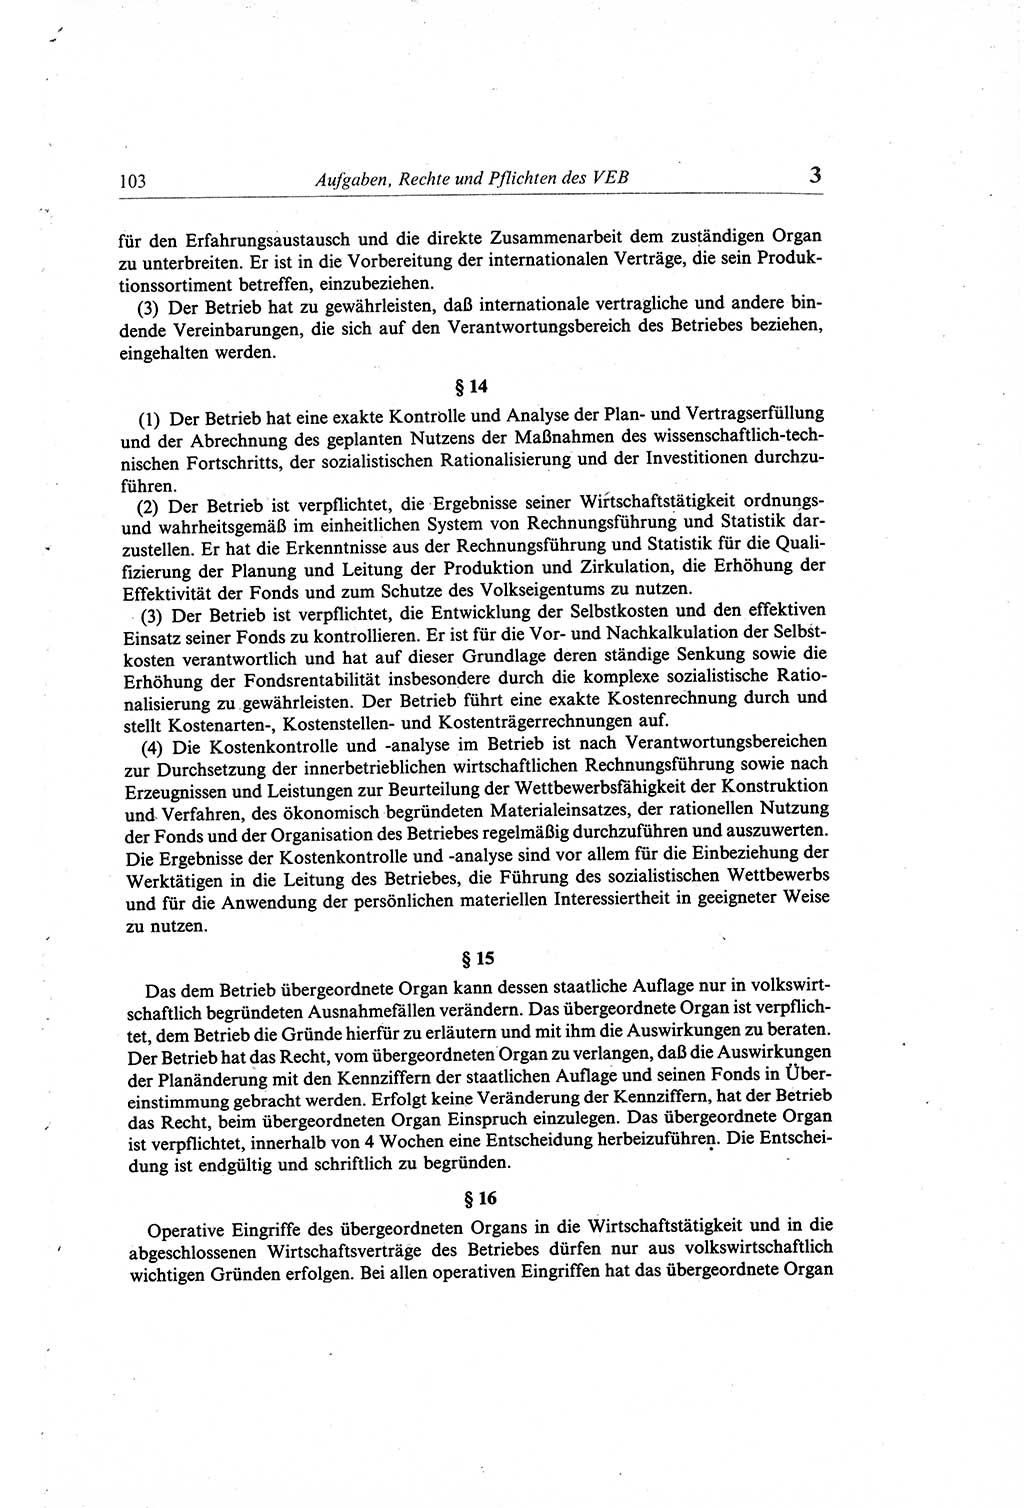 Gesetzbuch der Arbeit (GBA) und andere ausgewählte rechtliche Bestimmungen [Deutsche Demokratische Republik (DDR)] 1968, Seite 103 (GBA DDR 1968, S. 103)